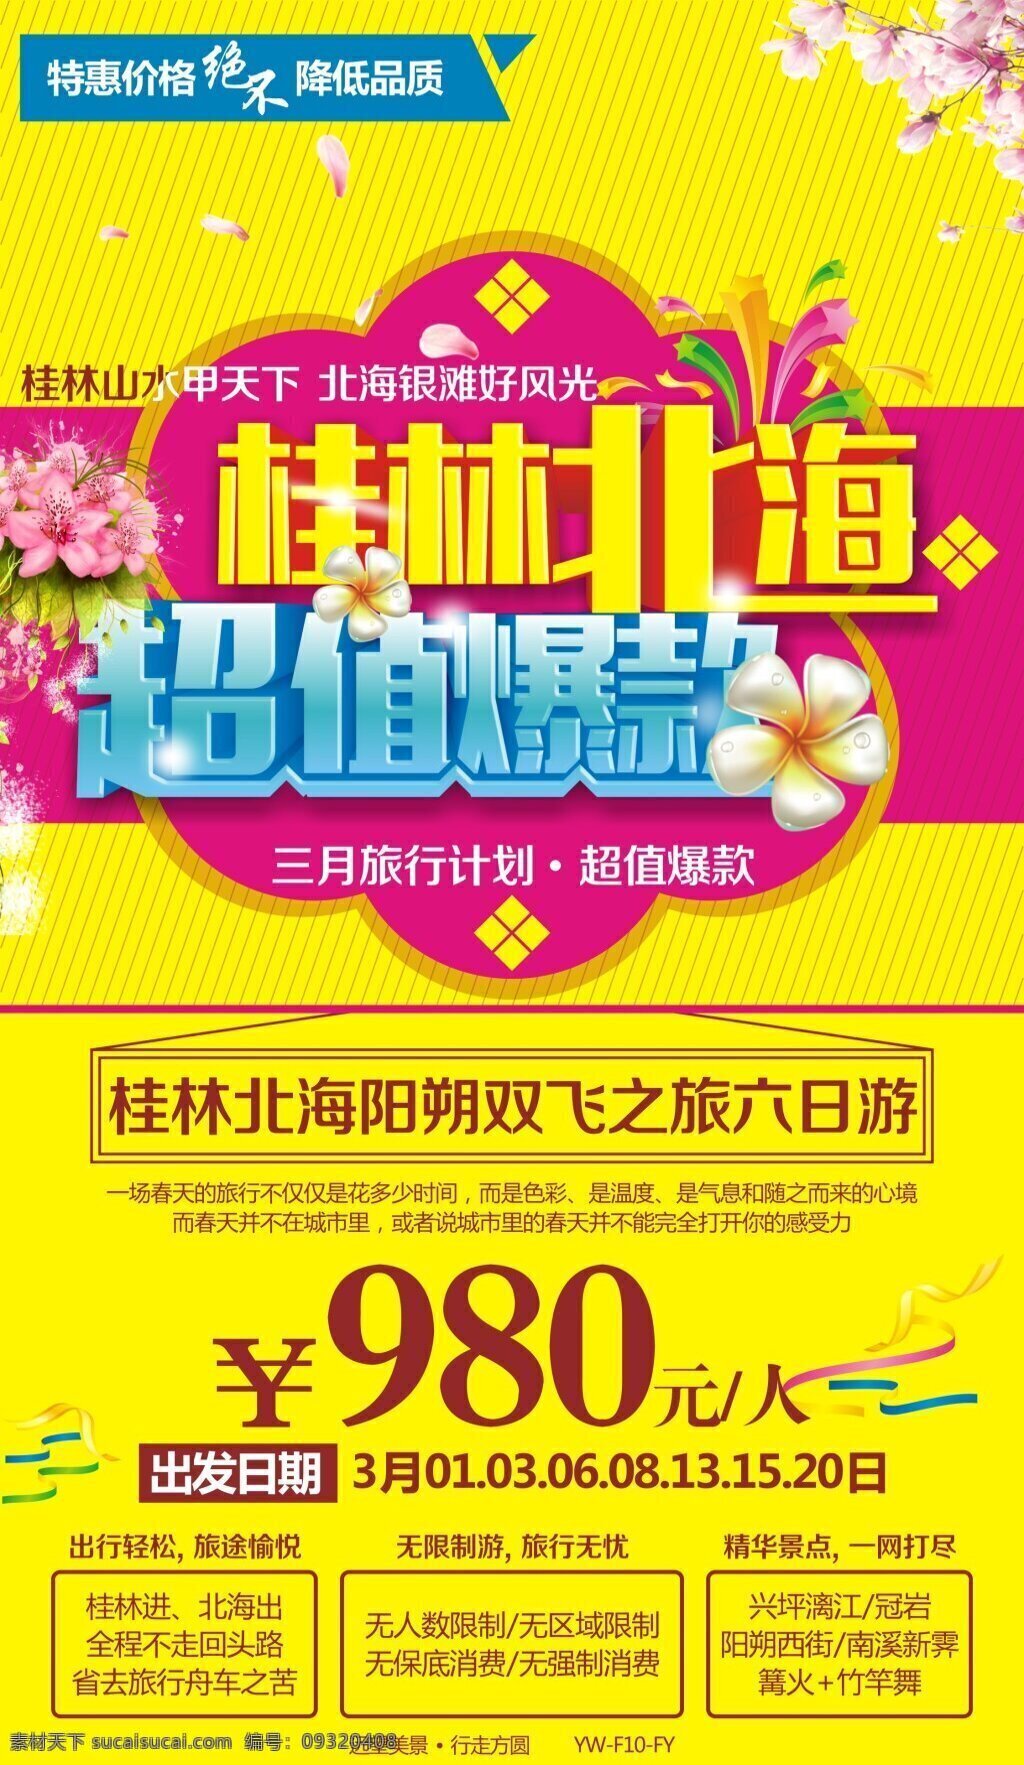 桂林 北海 旅游 广告 海报 桂林北海 旅游广告图 旅游宣传图 旅游海报 特价 花 黄色背景